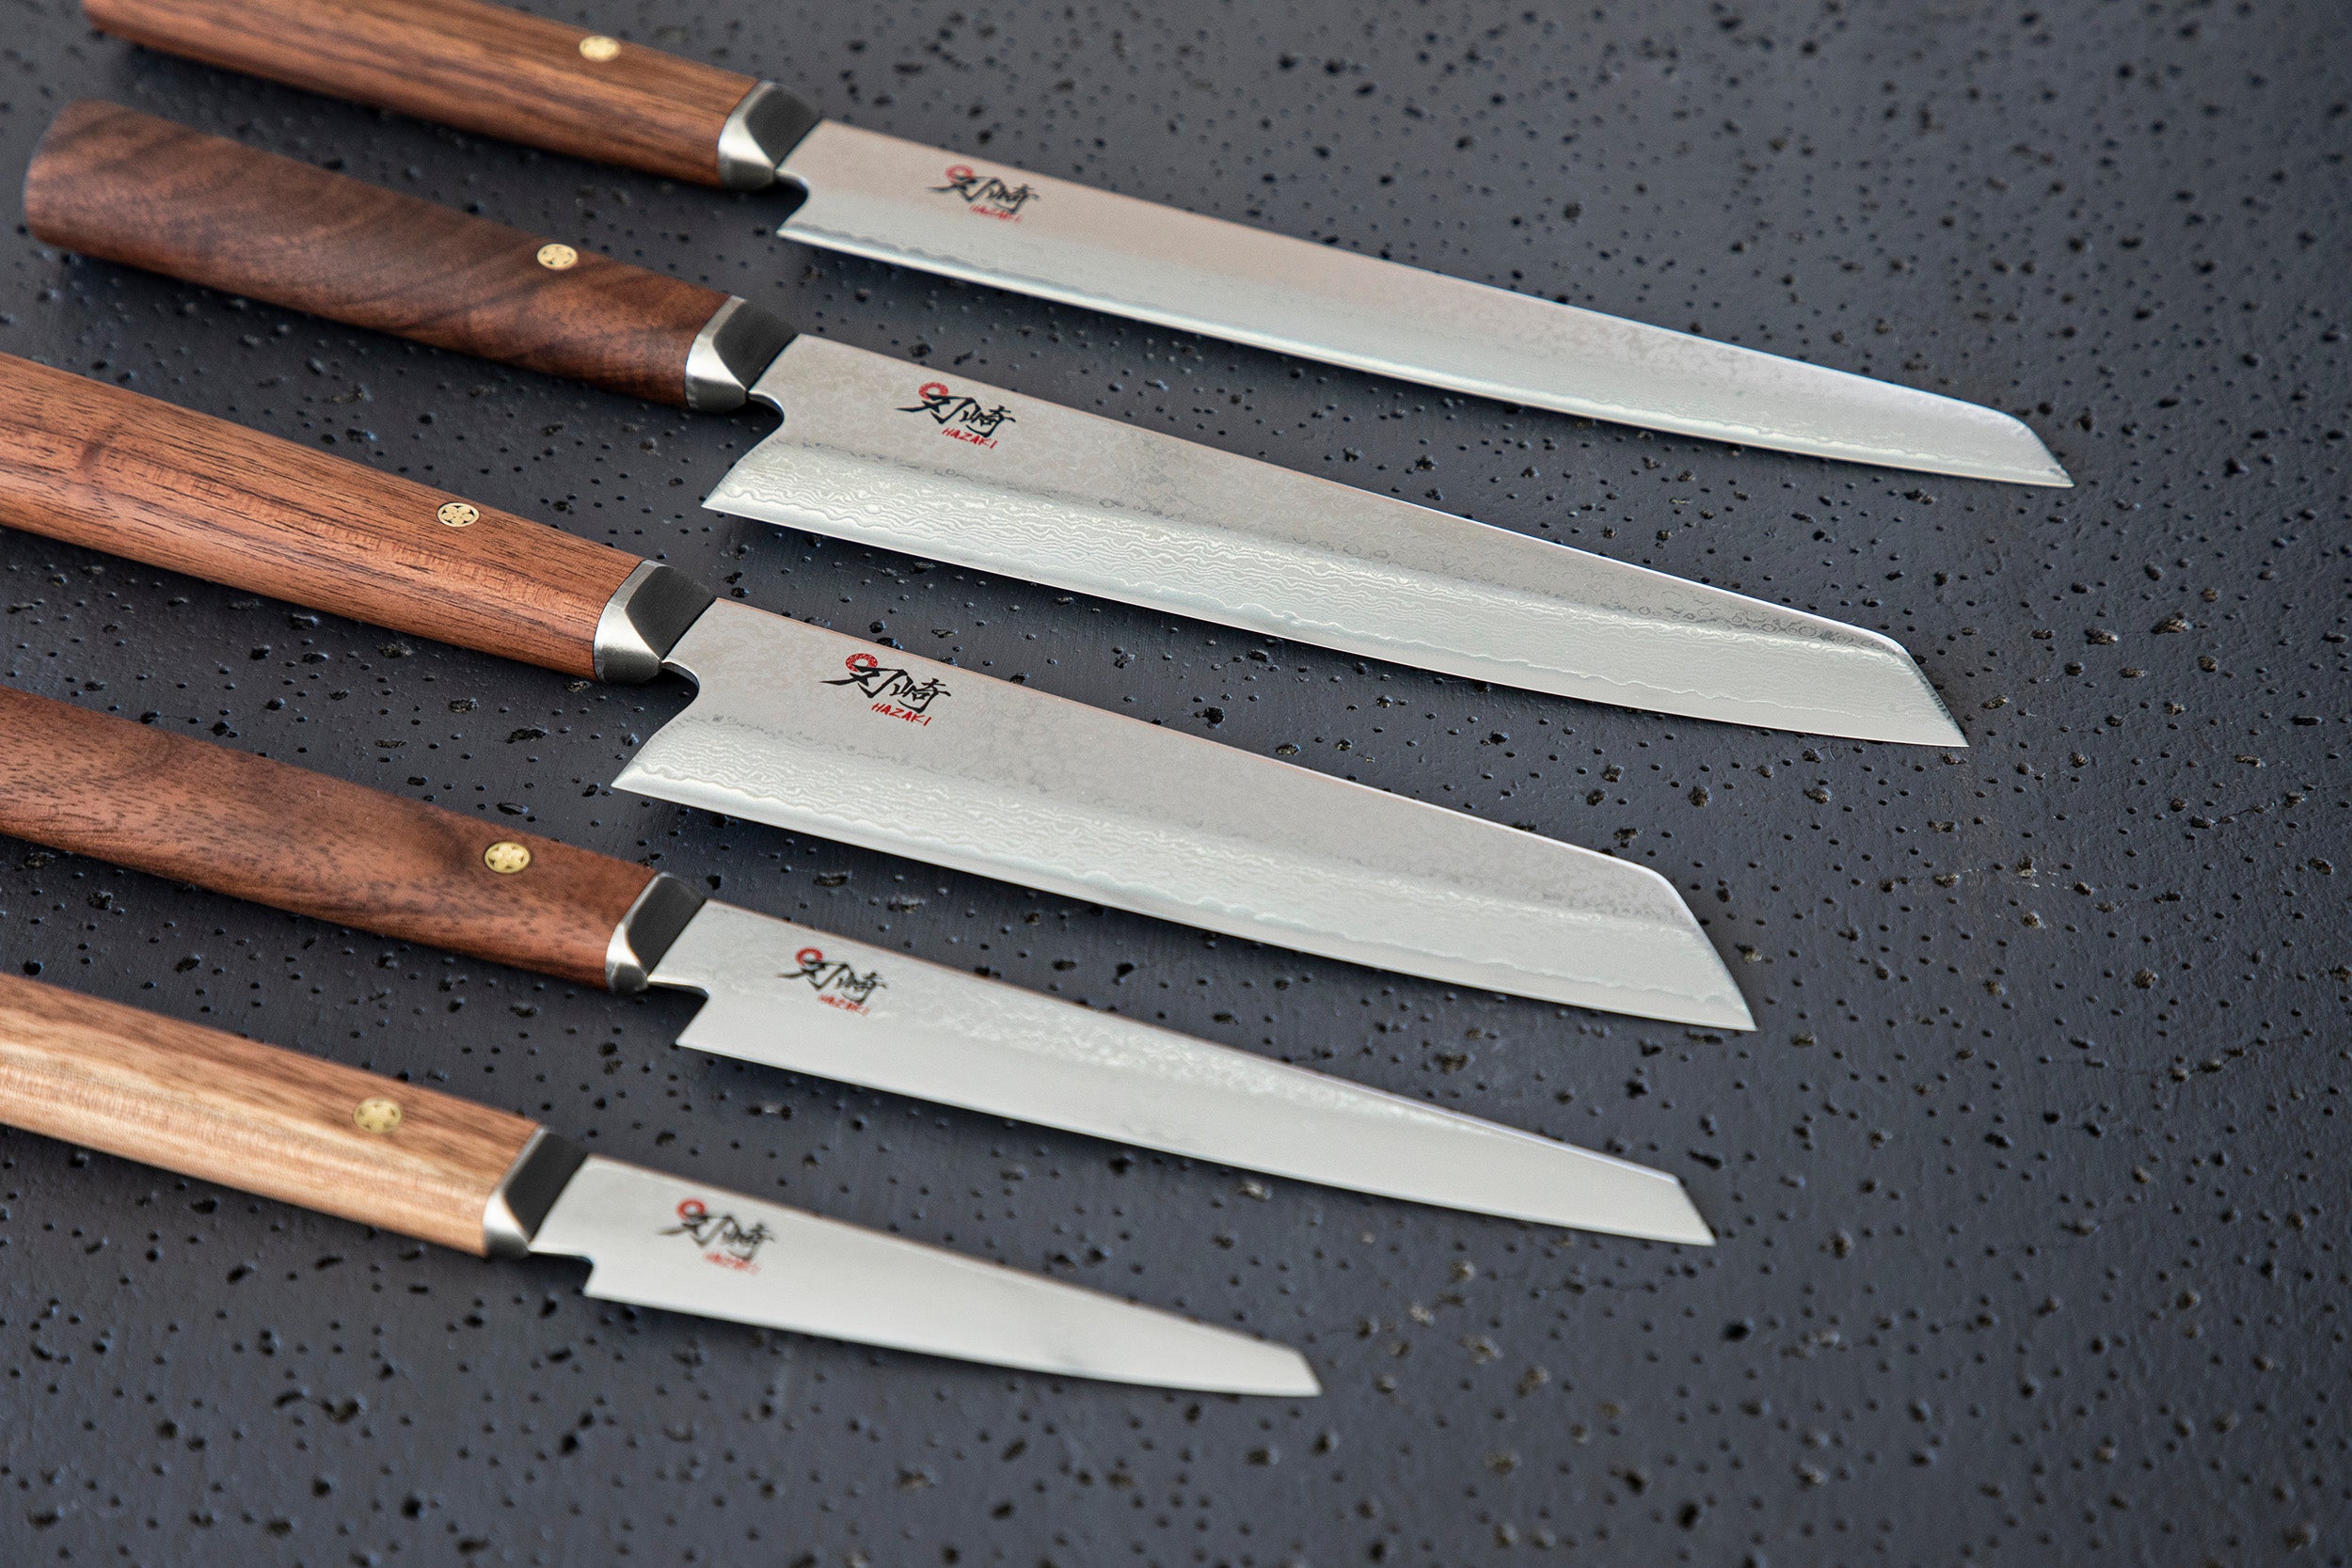 Ensemble de couteaux de chef personnalisés, couteaux de chefs